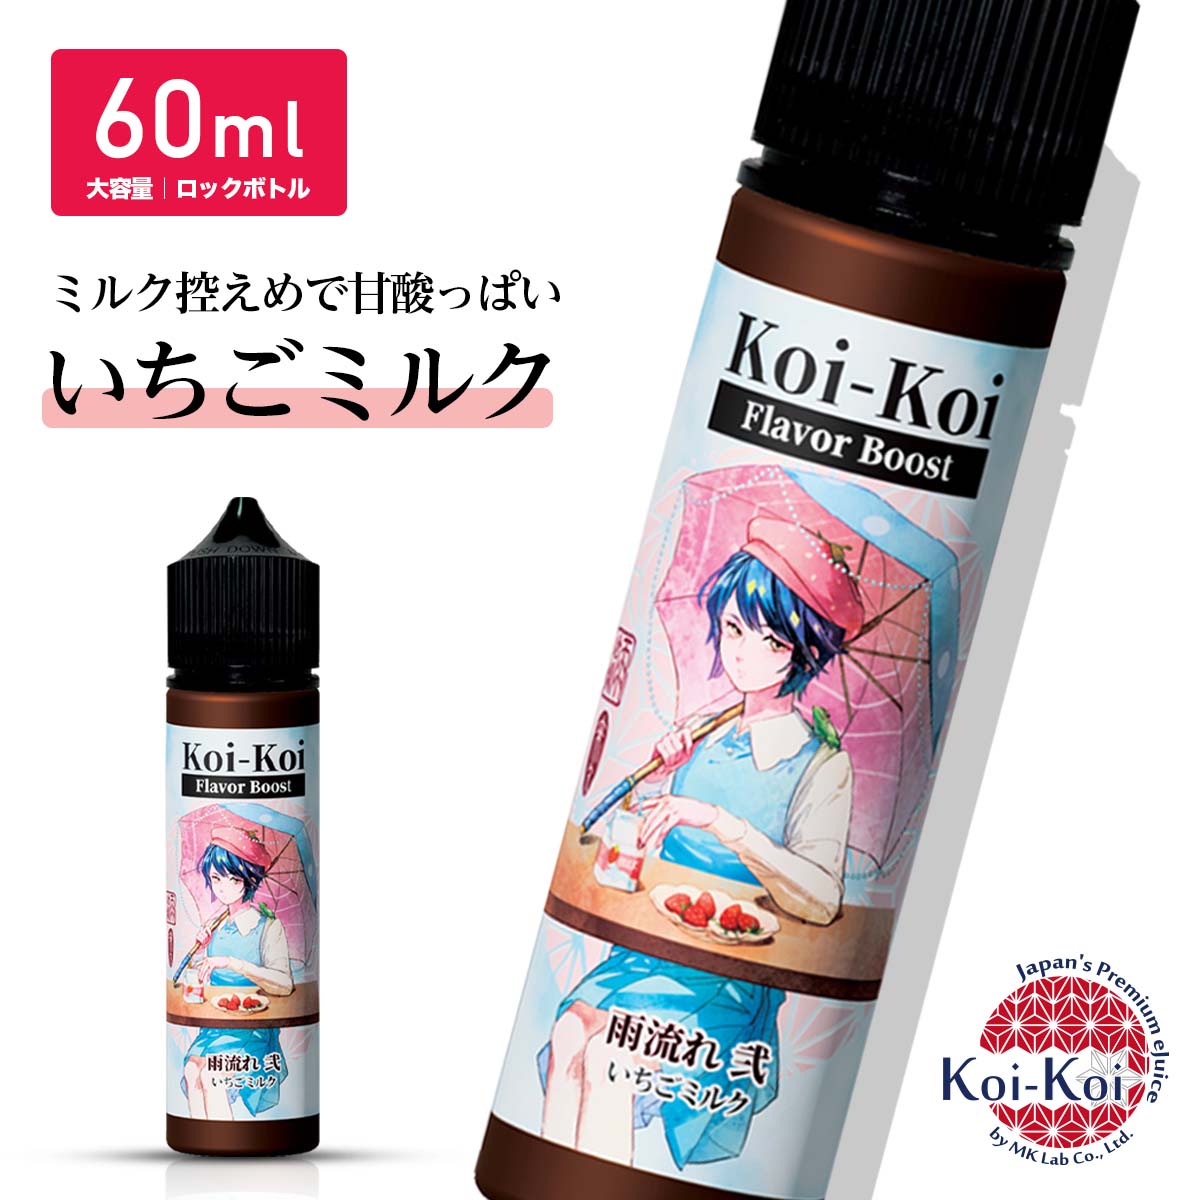 雨流れ 弐 MKLab 新作 濃いこいこい Koi-Koi Flavor Boost Rainy Draw II 60ml いちごミルク MK lab 国産リキッド ベ…